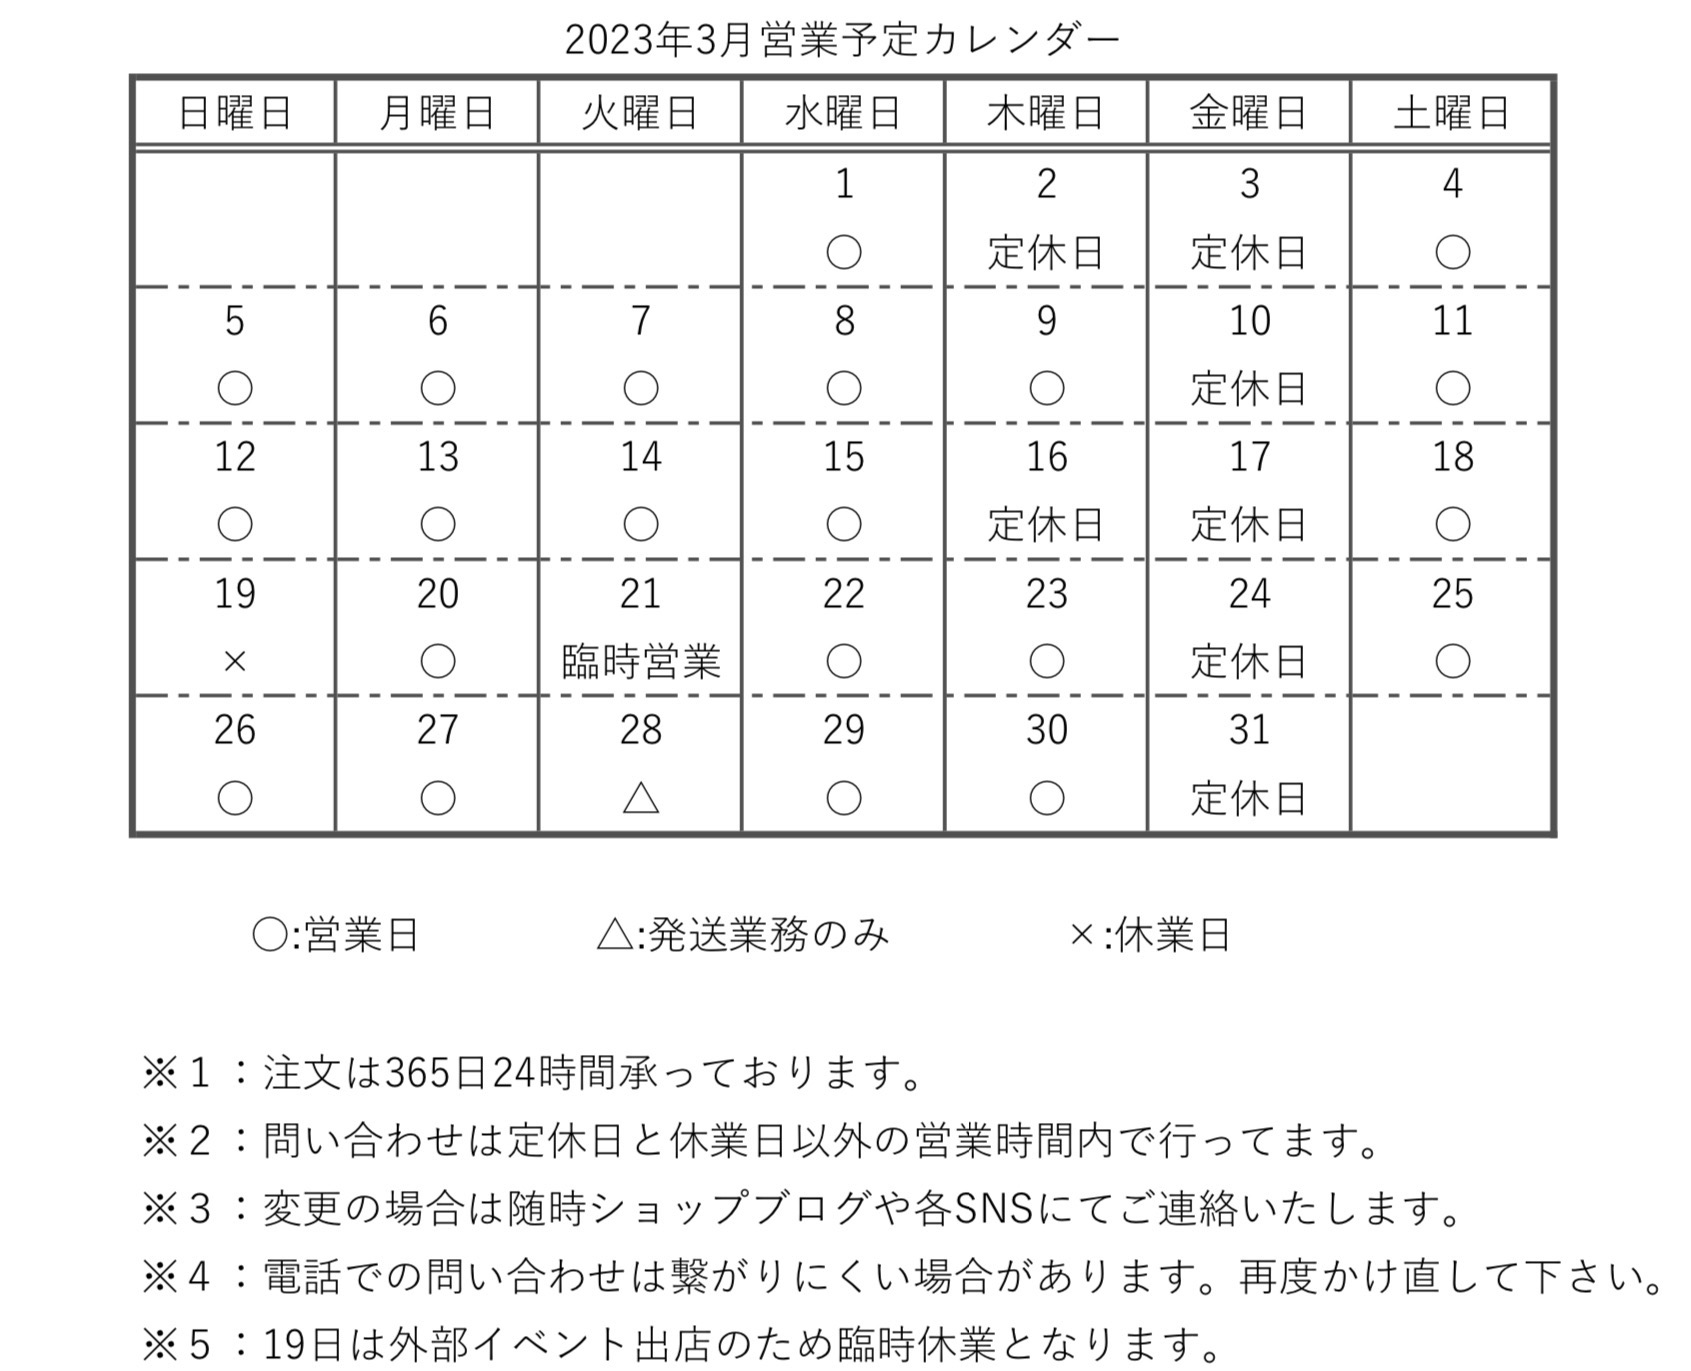 【カレンダー】2023年3月営業予定カレンダー